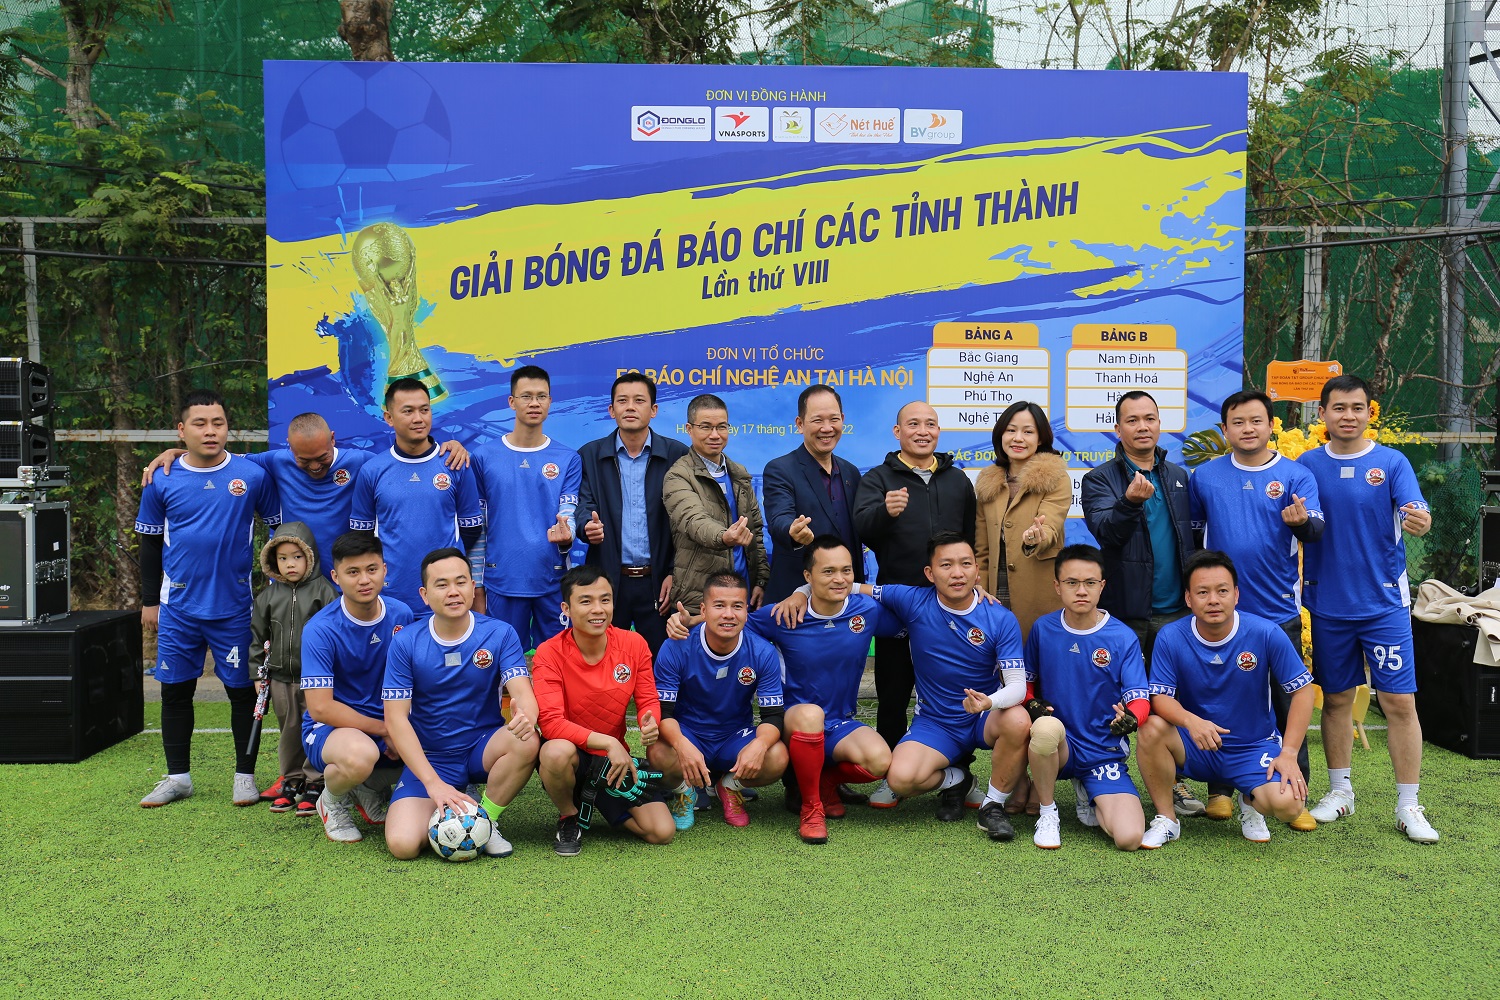 FC báo chí Bắc Giang tại “Giải bóng đá báo chí các tỉnh thành lần thứ VIII” .